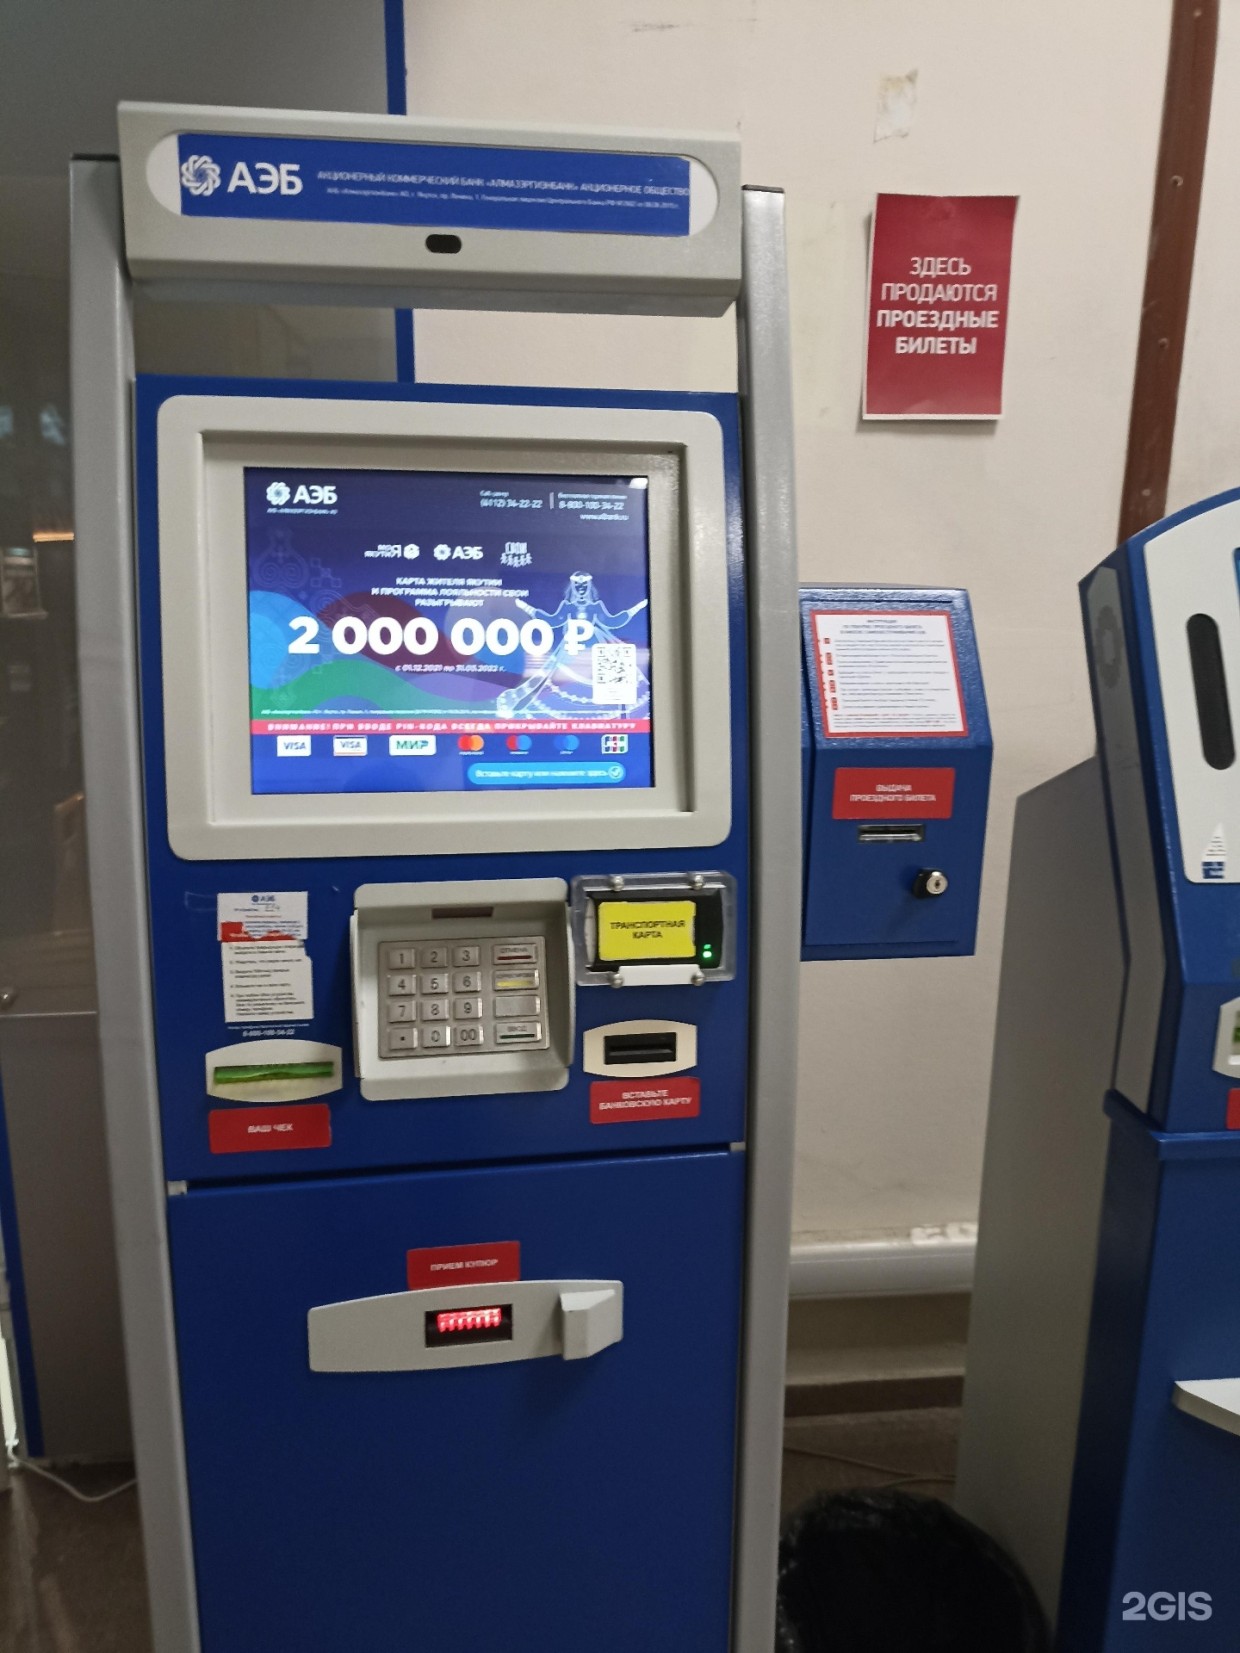 Отзыв лицензии у «Киви банка» отразился на работе терминалов АЭБ в Якутске